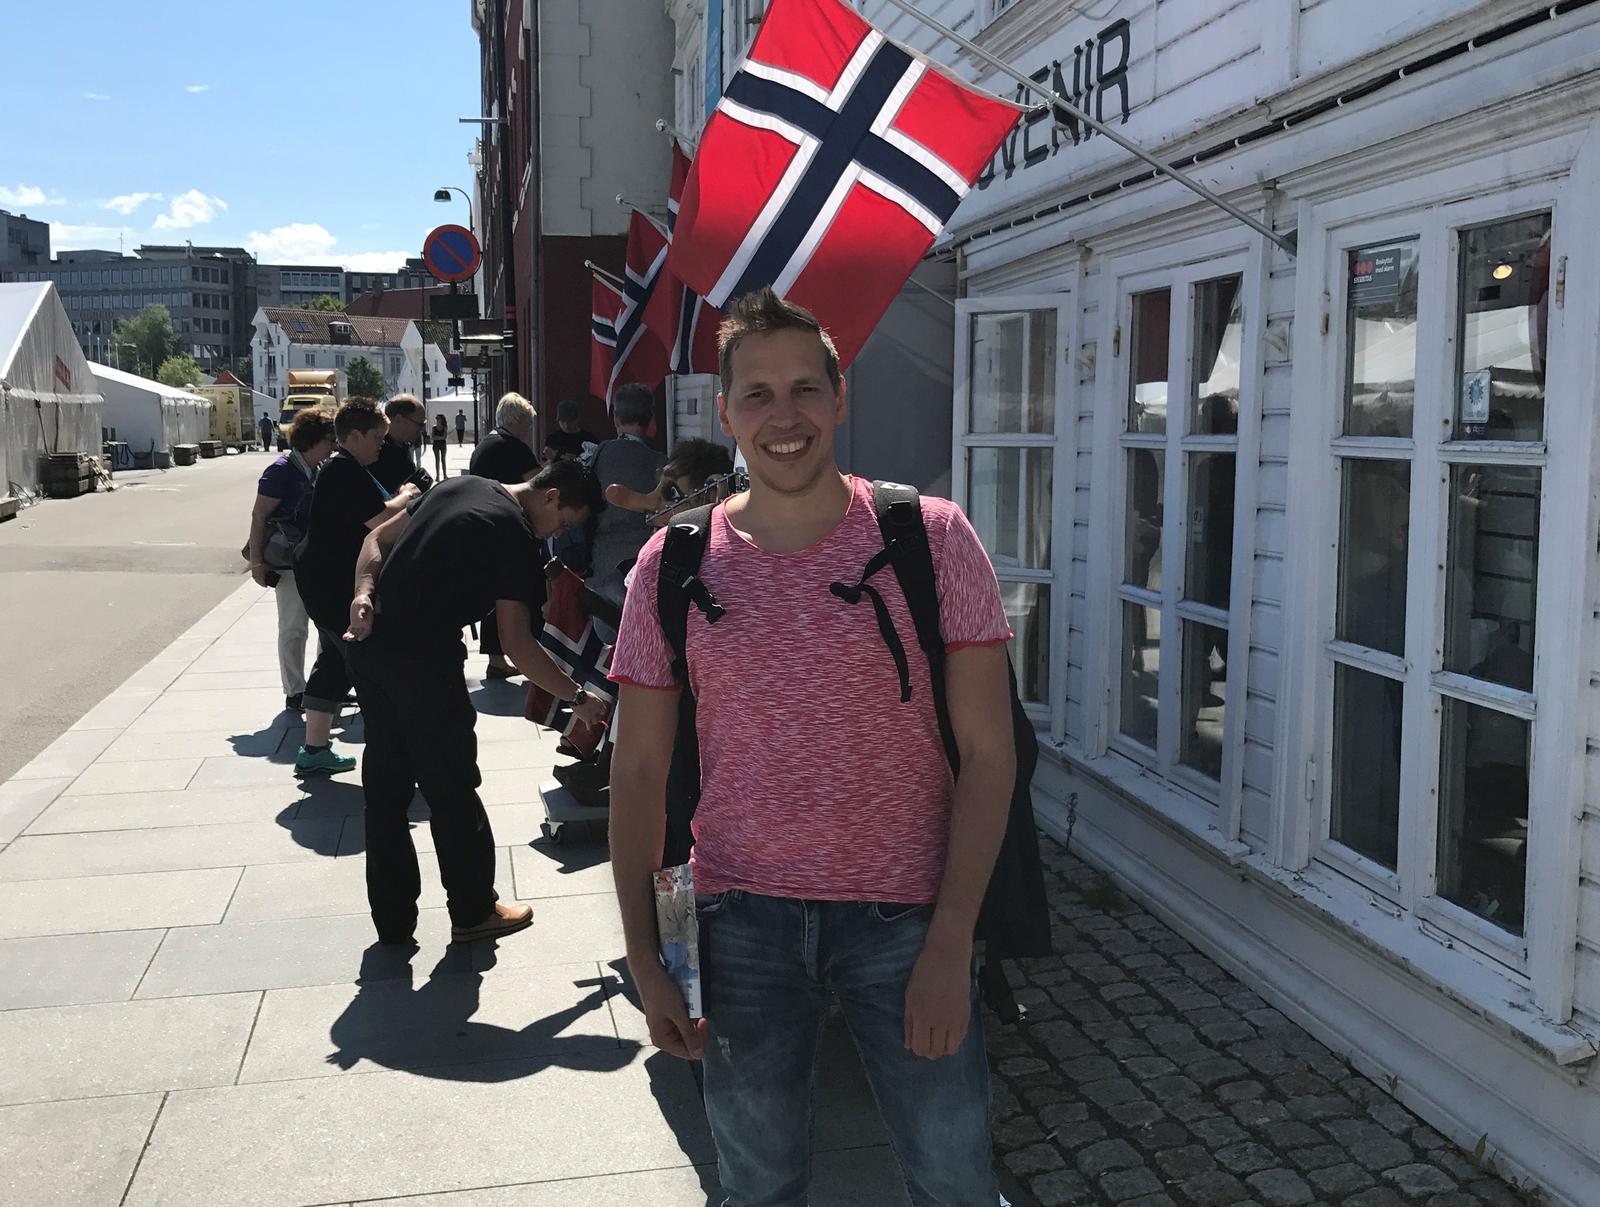 En sykepleier i Norge: Jeg jobber her, jeg pløyer ikke